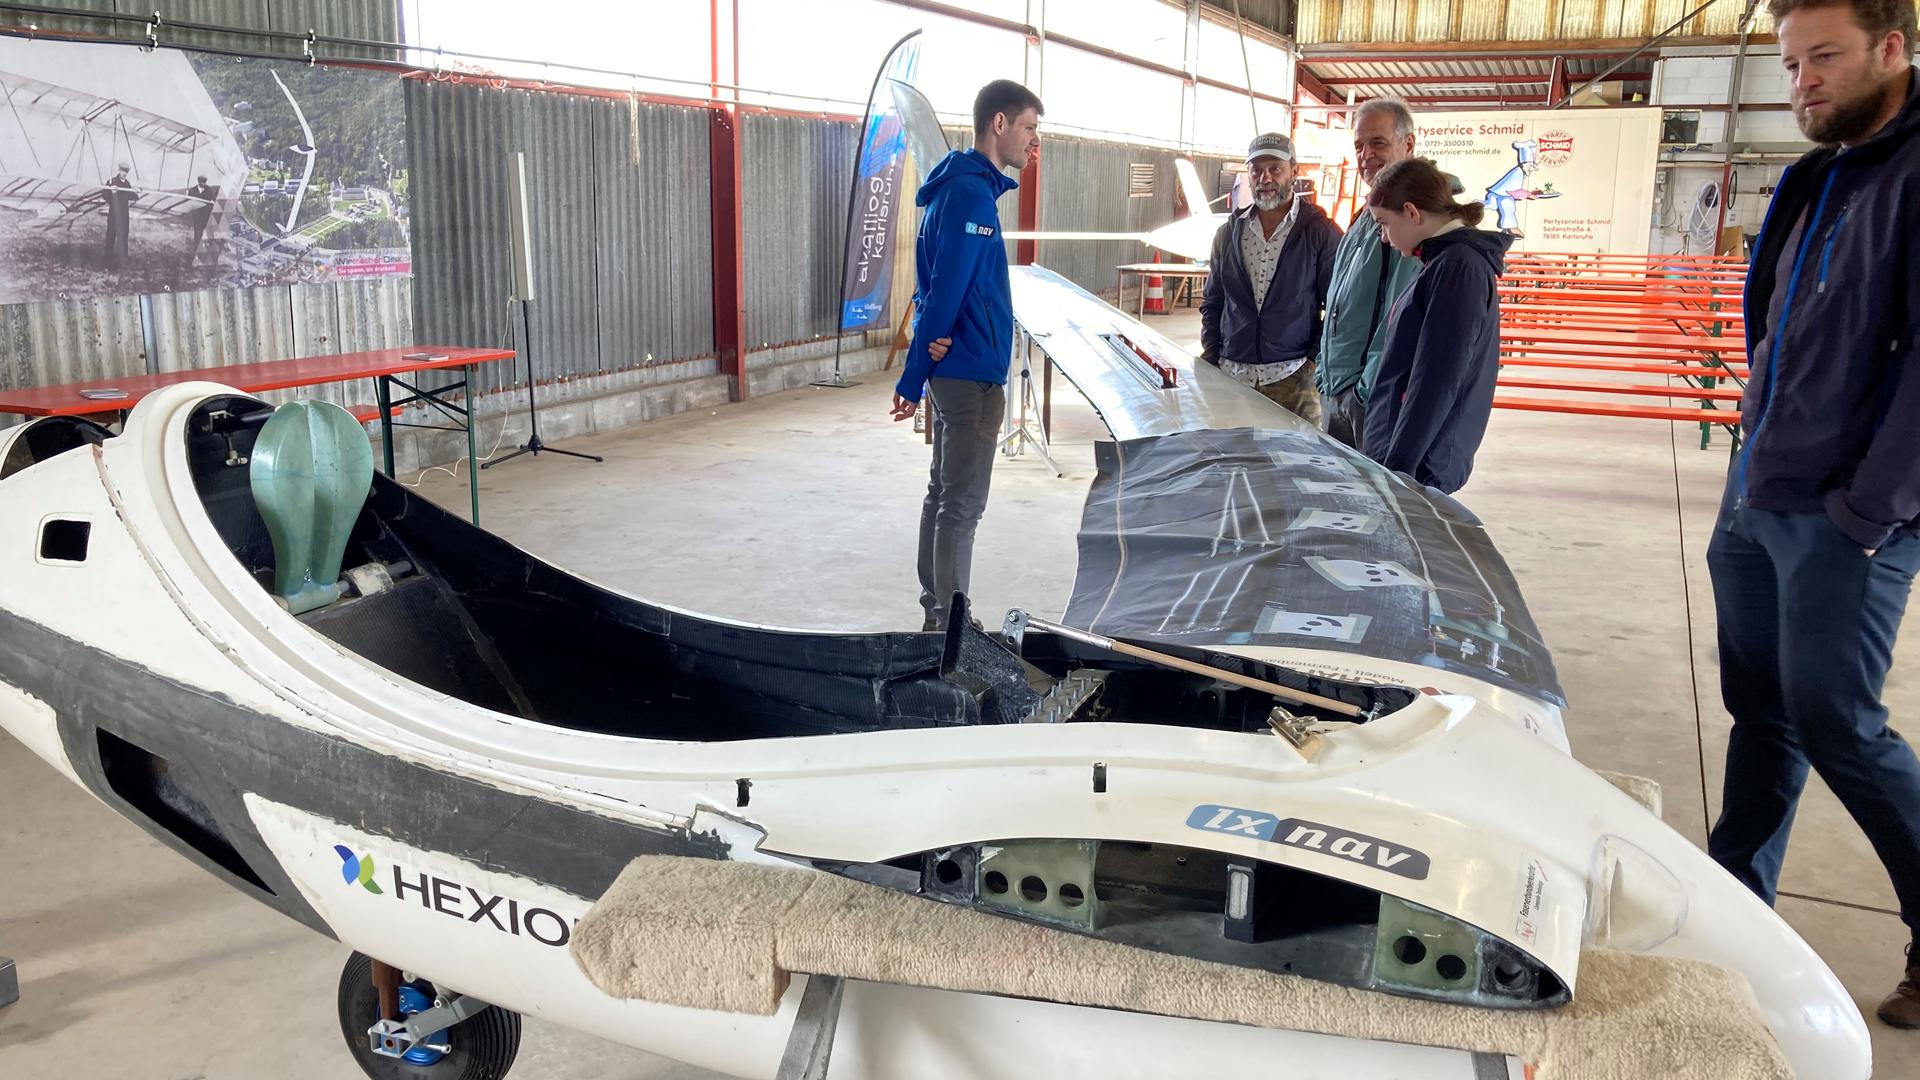 Forschung und Entwicklung: Studierende des Vereins Akaflieg am KIT stellen ihre Fortschritte beim Bau eines so genannten Nurflügel-Segelflugzeugs vor.